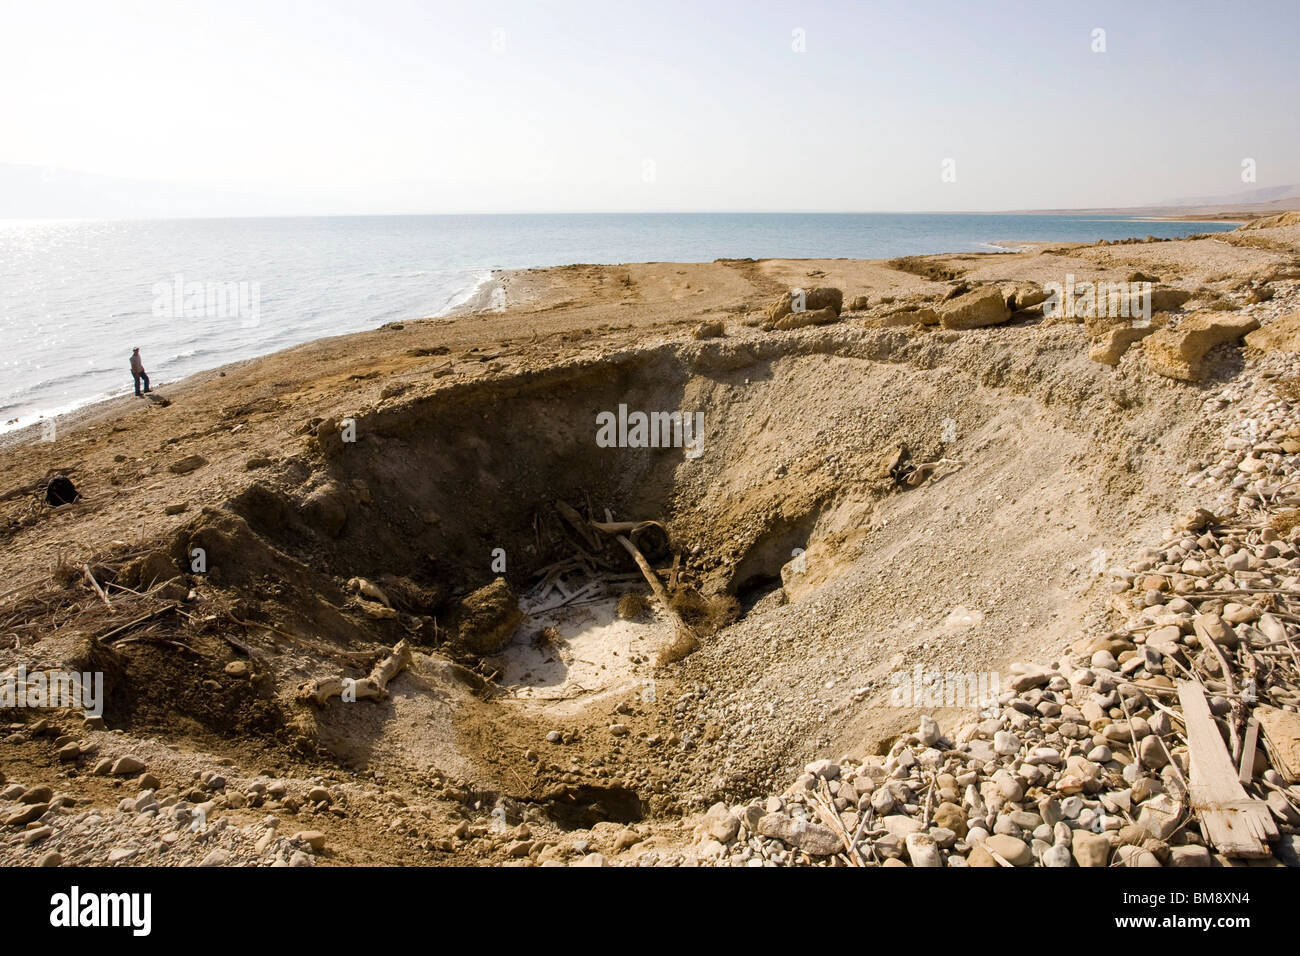 Israël, la Mer Morte une dépression causée par le recul de niveau d'eau de la Mer Morte Banque D'Images